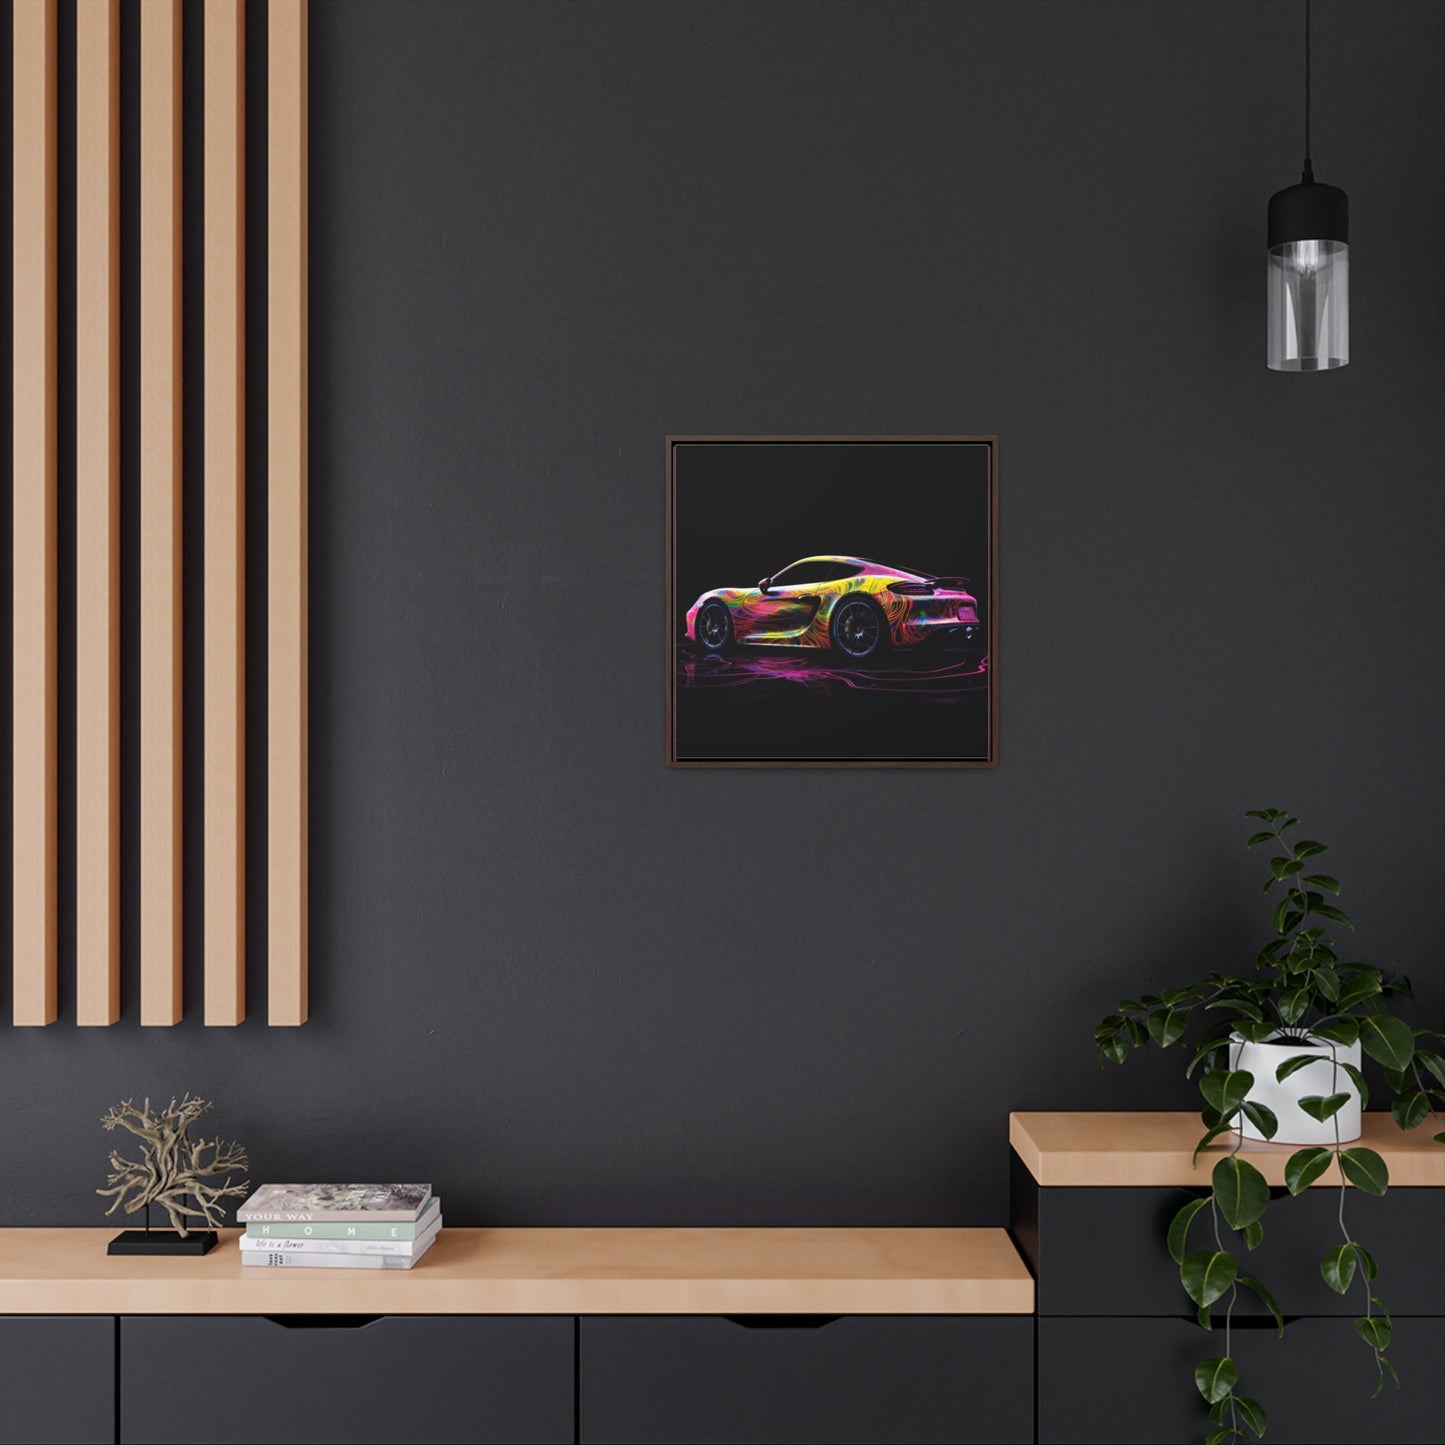 Gallery Canvas Wraps, Square Frame Porsche Flair 4